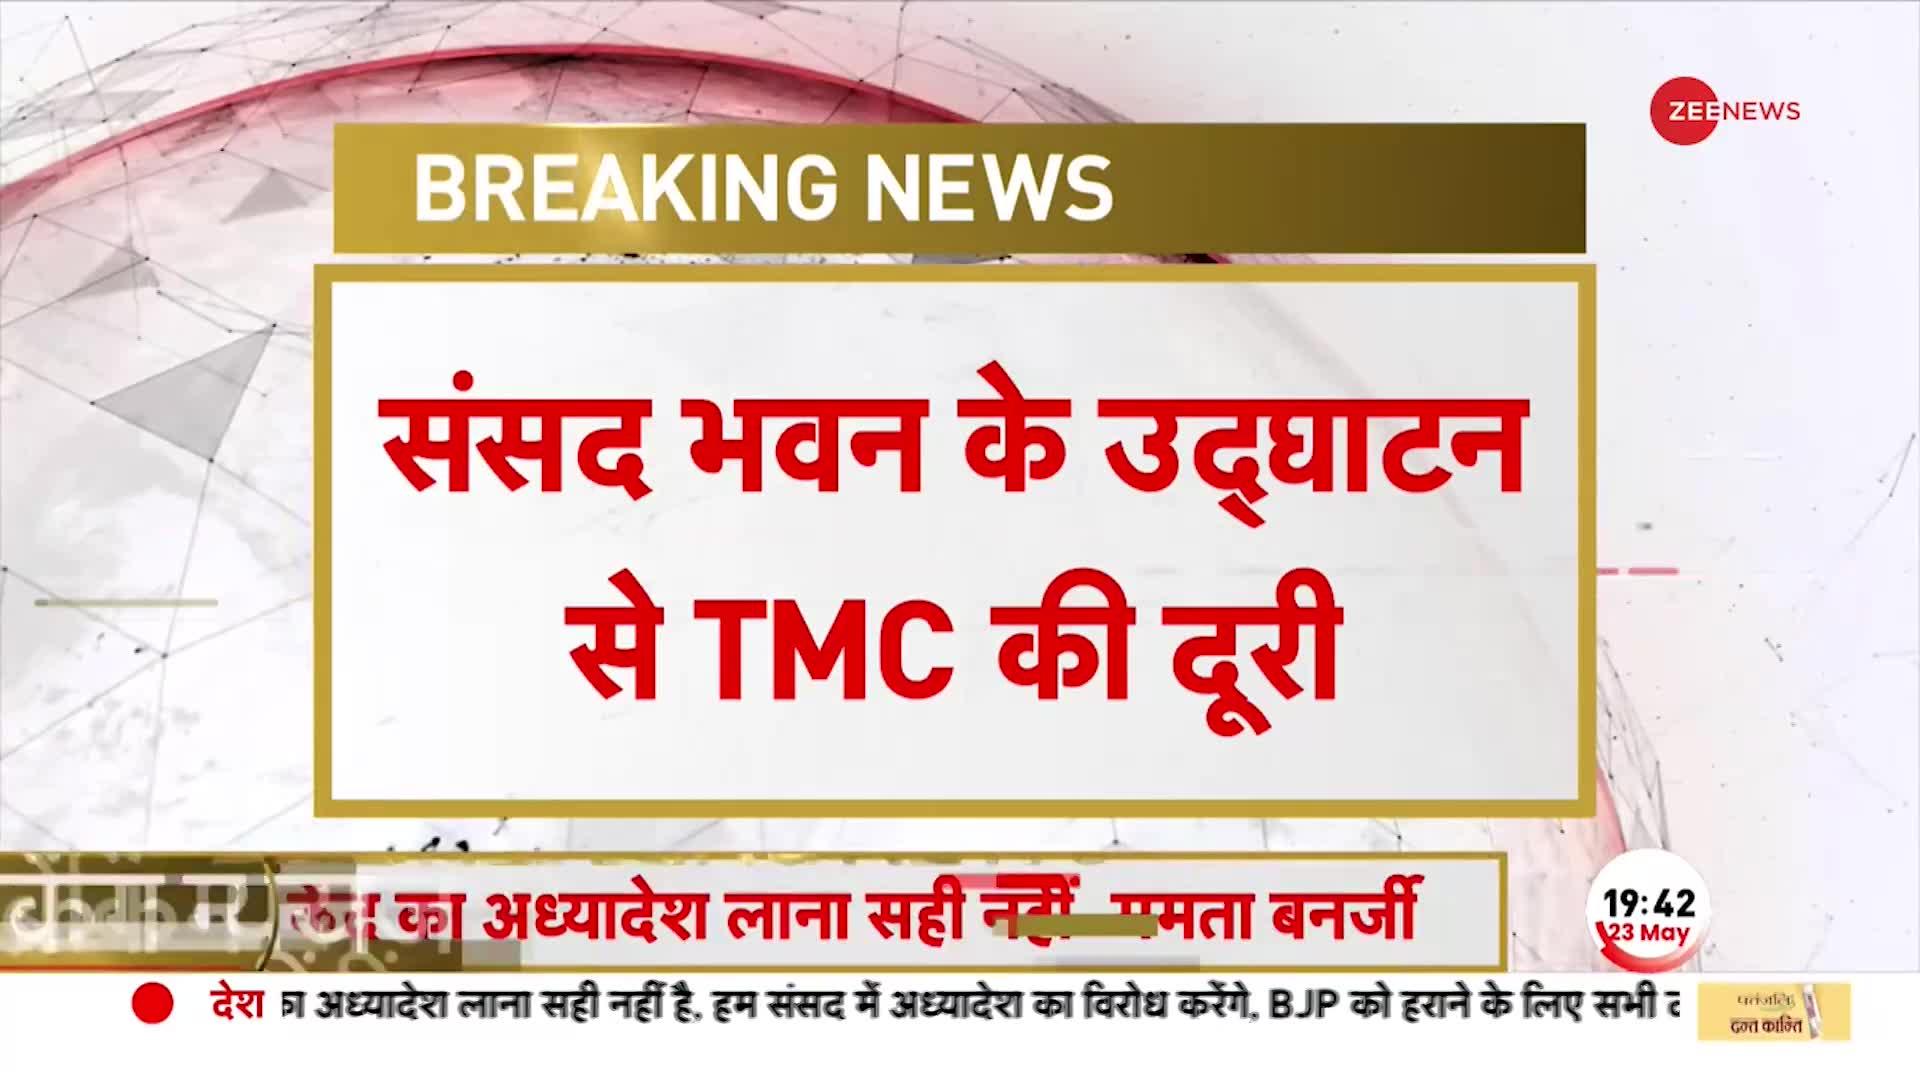 नए संसद भवन के उद्घाटन में शामिल नहीं होगी TMC, दिया बड़ा बयान